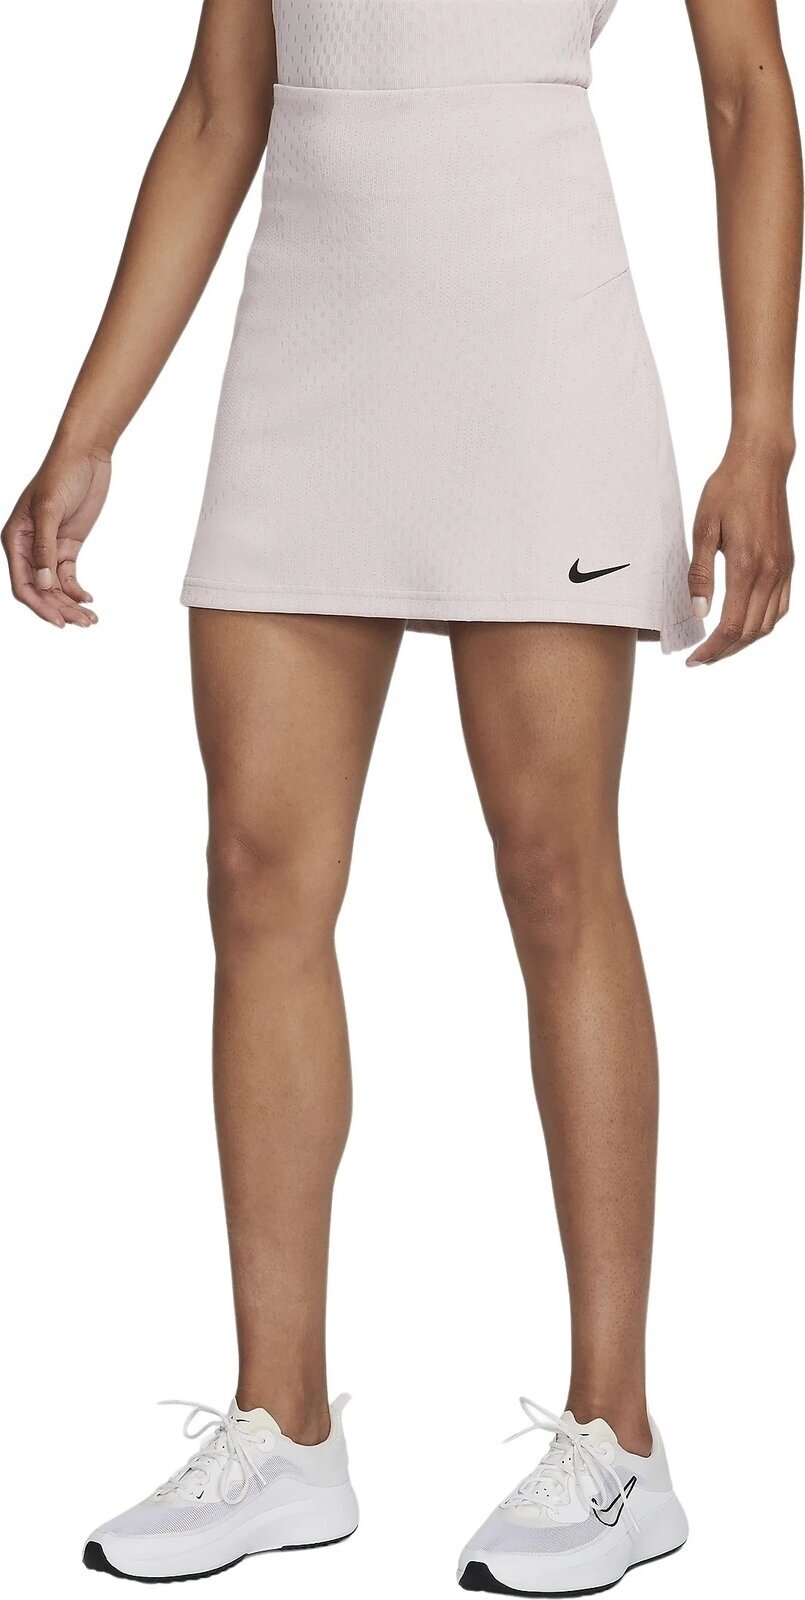 Gonne e vestiti Nike Dri-Fit ADV Tour Skirt Platinum Violet/Black L